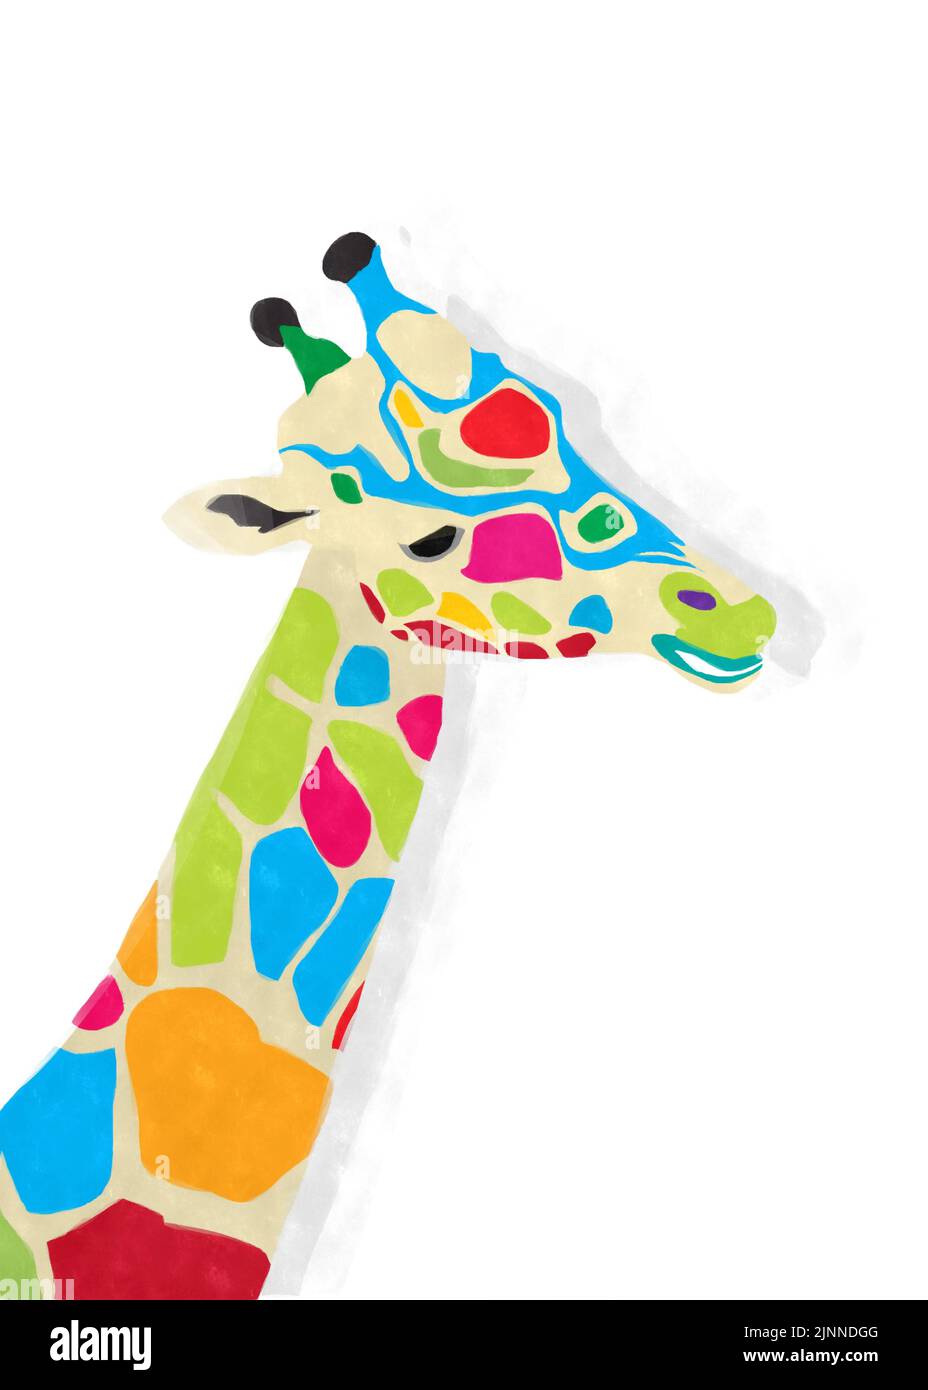 Dessin aquarelle d'une girafe colorée sur fond blanc Banque D'Images